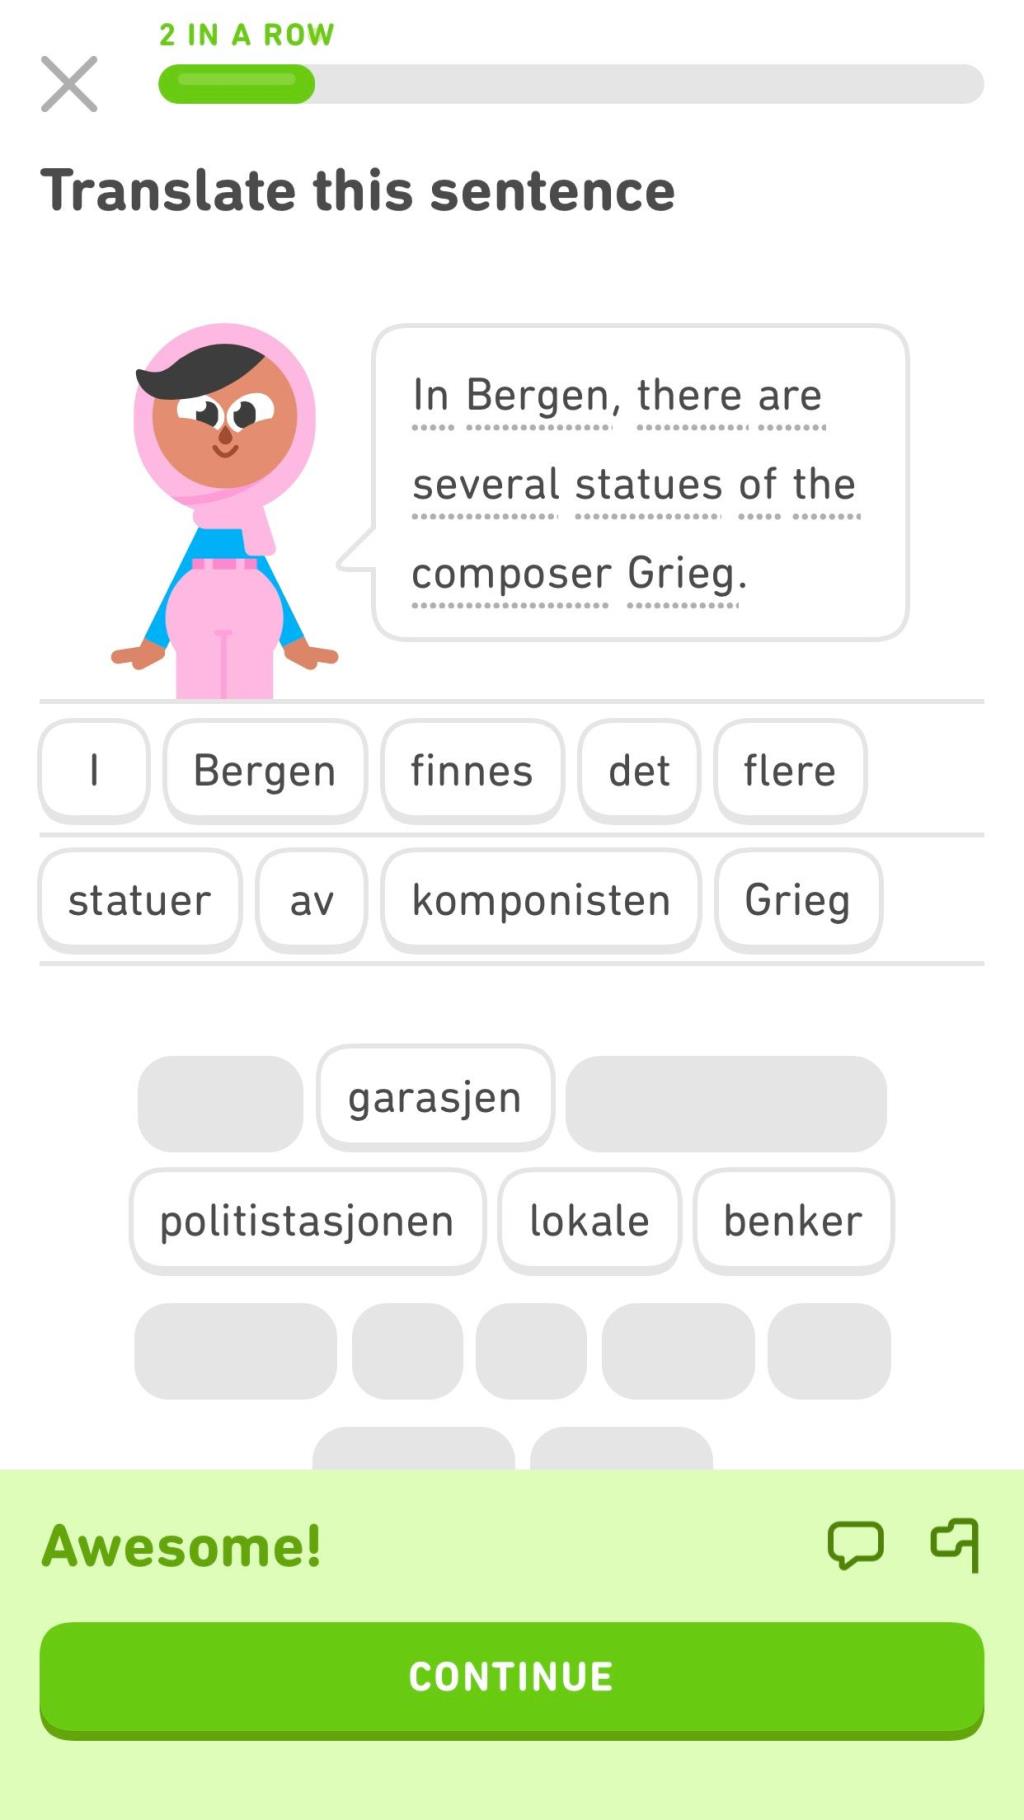 Bir Duolingo Ağacını Bitirdiniz mi?  İşte Duolingo ile Öğrenmeye Devam Etmenin 10 Yolu